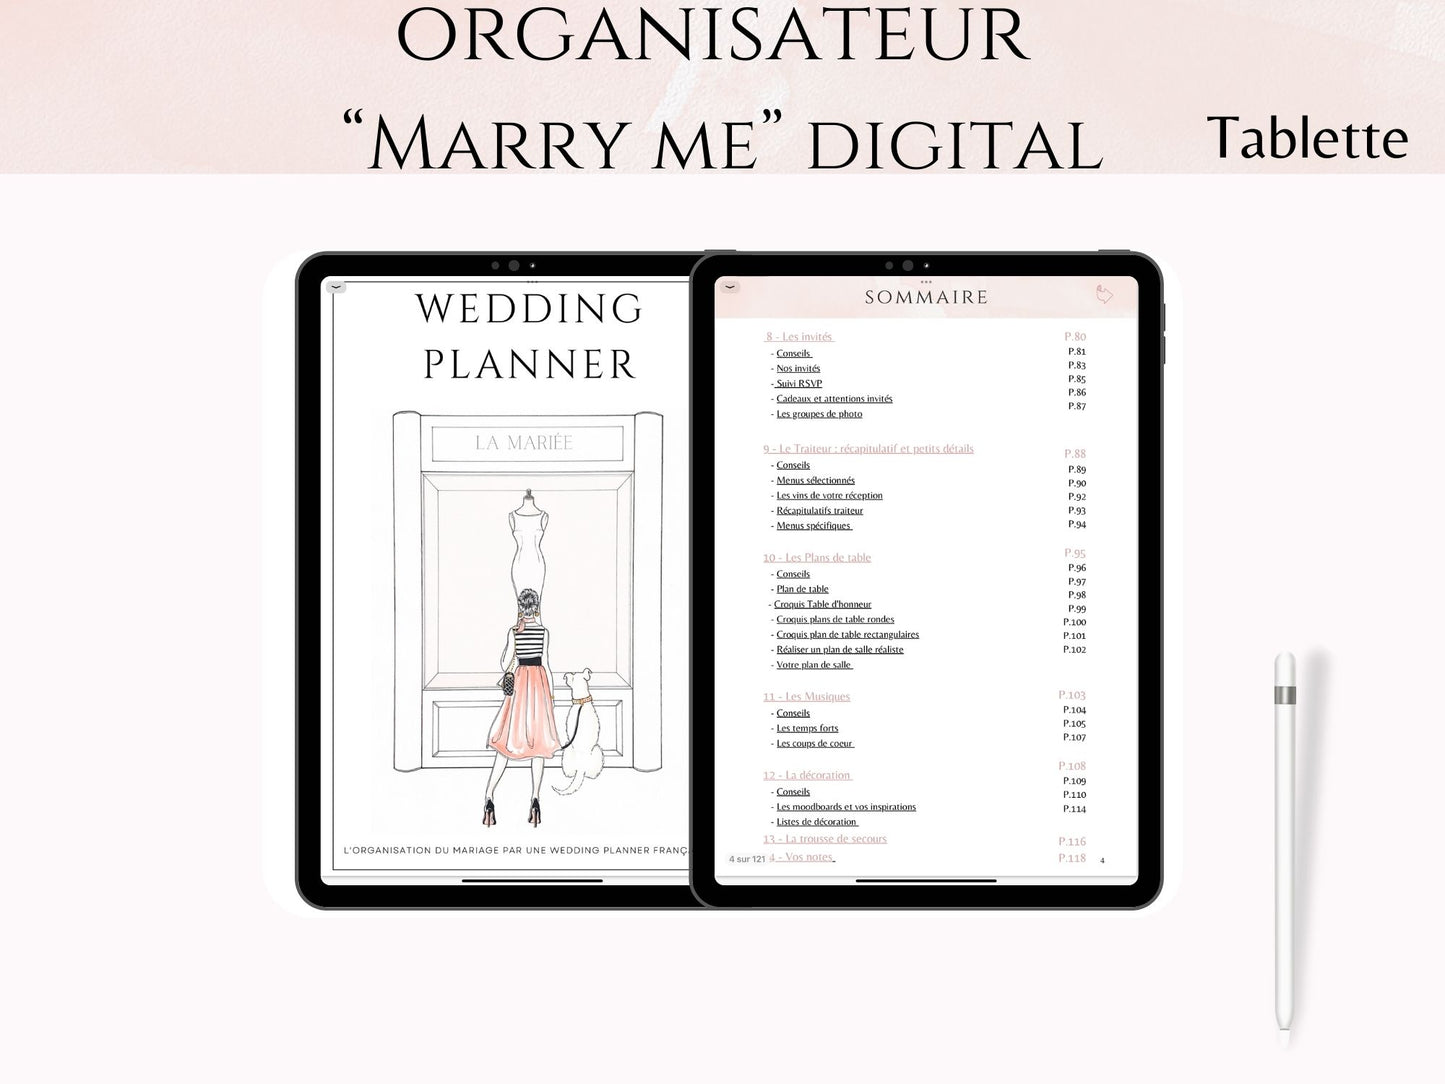 Organisateur de mariage digital - "Marry Me" pour Tablette